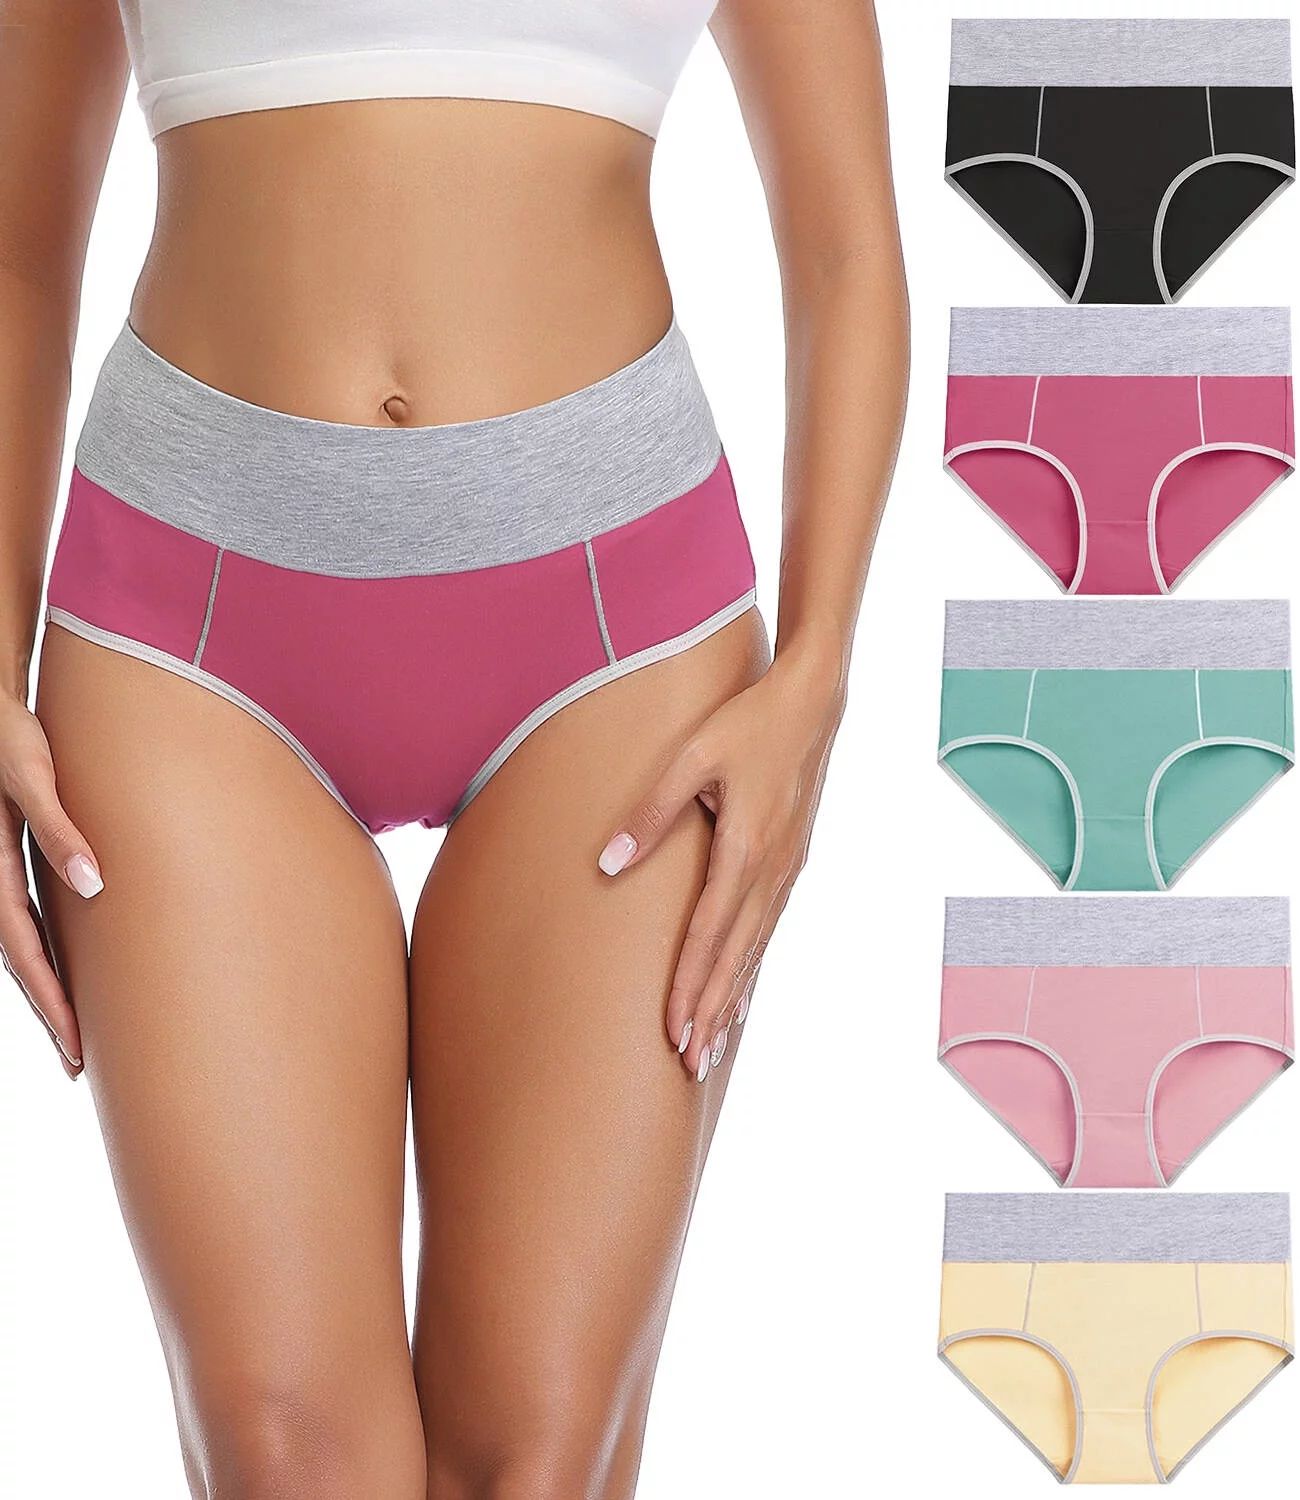 wirarpa Women's Cotton Underwear High Waist Briefs Panties Full Coverage Underpants 5 Pack Sizes ... | Walmart (US)